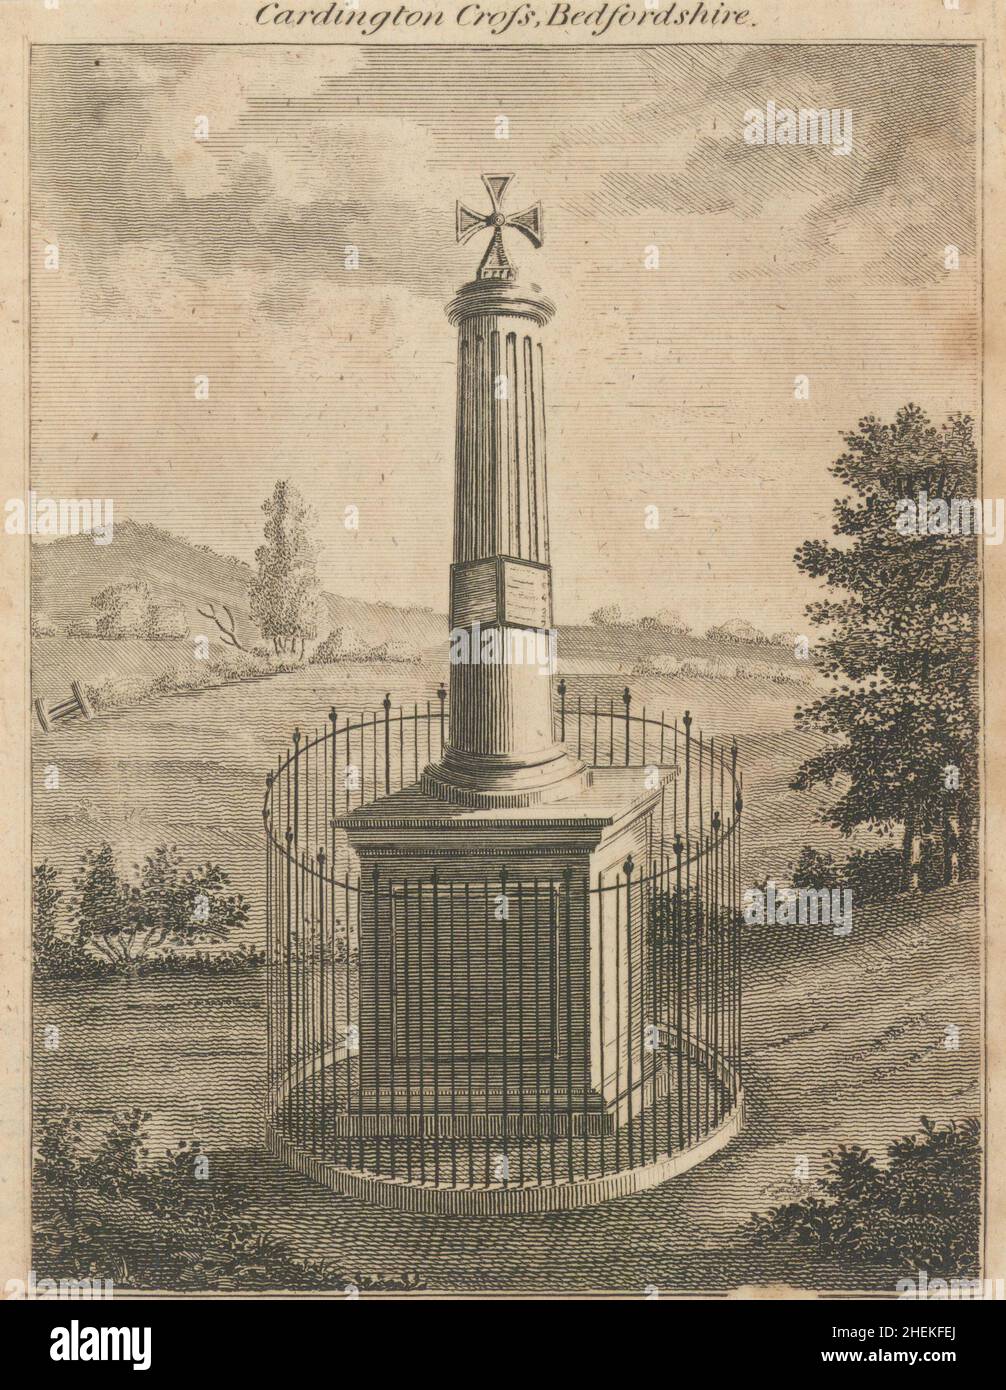 Blick auf das 1796 Cardington Cross, Bedfordshire. 1837 1797 alte Druckausgabe ersetzt Stockfoto